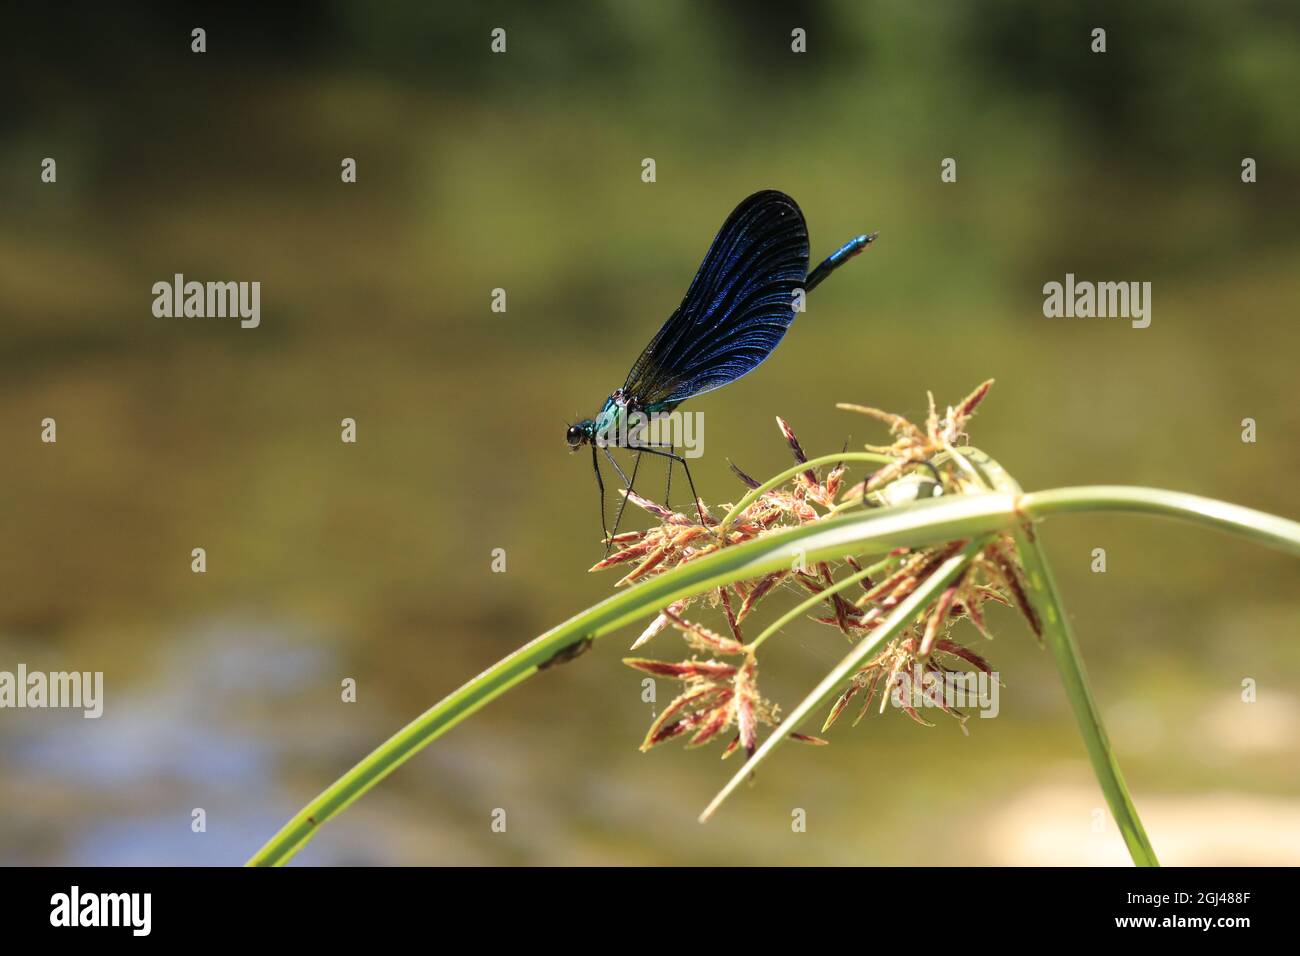 Une mouche bleue mangeant un insecte qu'elle a chassé. Banque D'Images